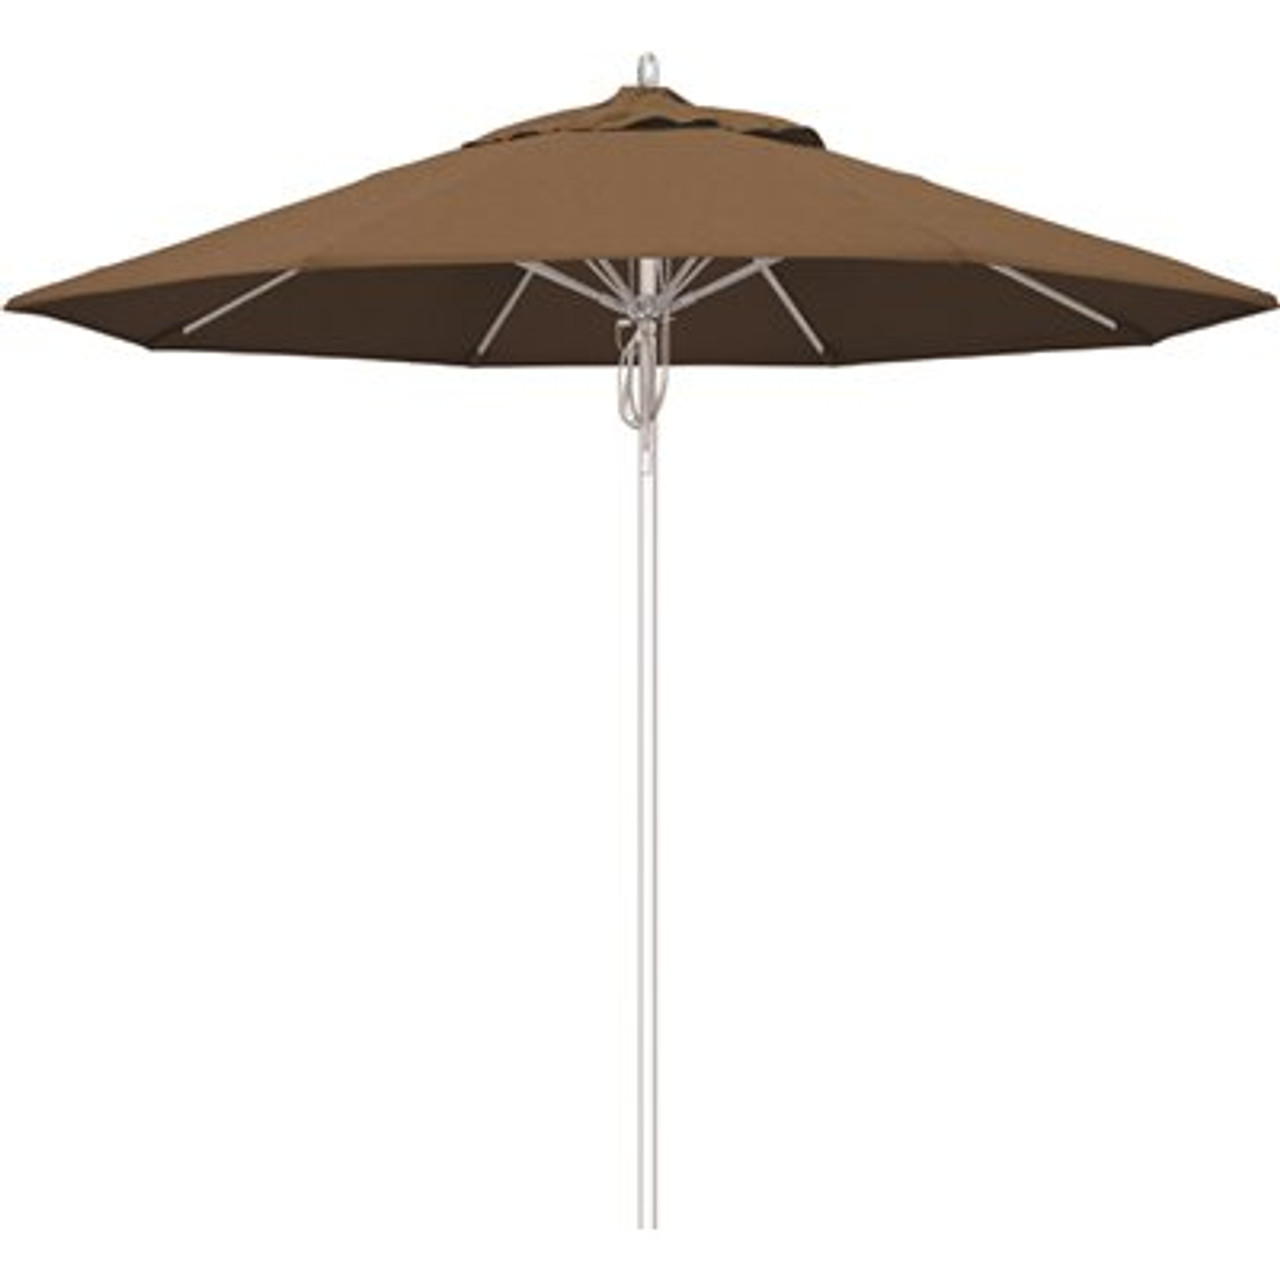 California Umbrella 9 ft. Silver Aluminum Commercial Fiberglass Ribs Market Patio Umbrella and Pulley Lift in Teak Sunbrella